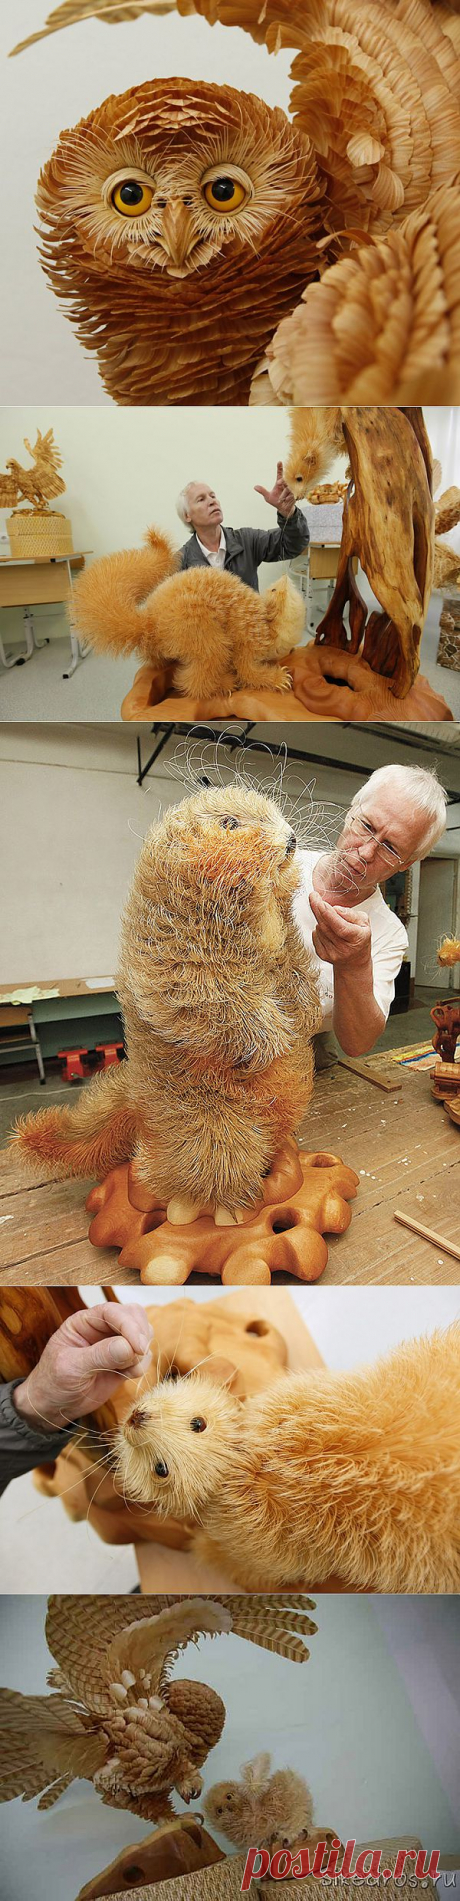 Сибирский мастер создает удивительные скульптуры из дерева.